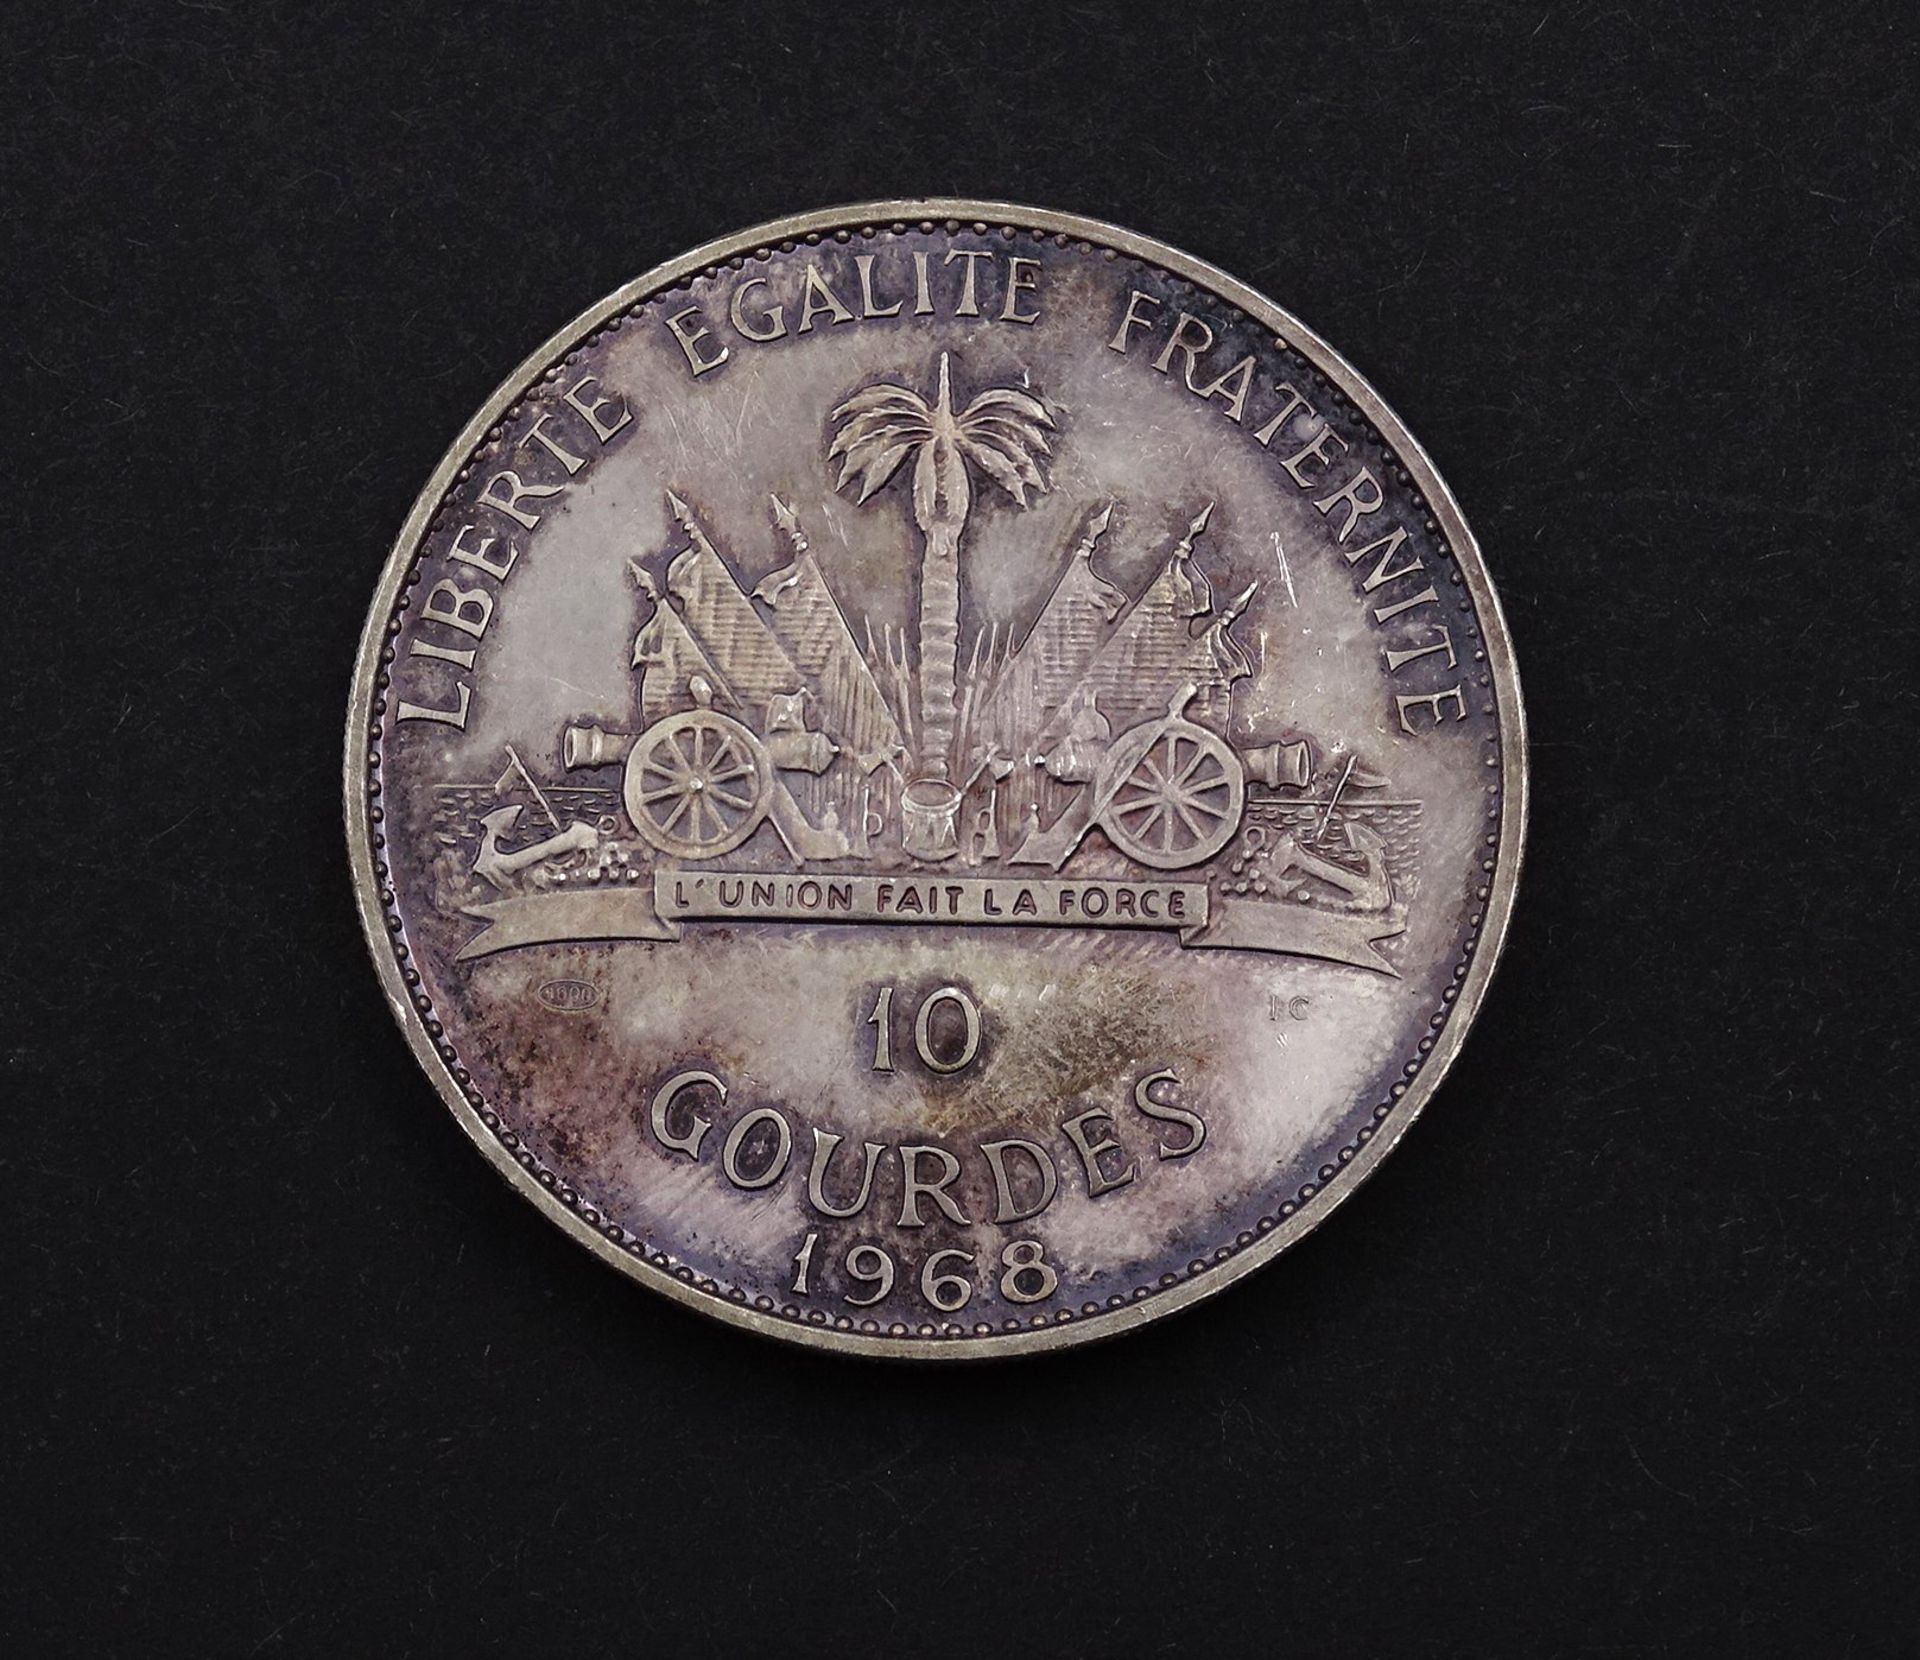 Haiti 10 Gourdes 1968 "10 Jahre Revolution", 1000er Silber, D. 40mm, 47g. - Bild 2 aus 2